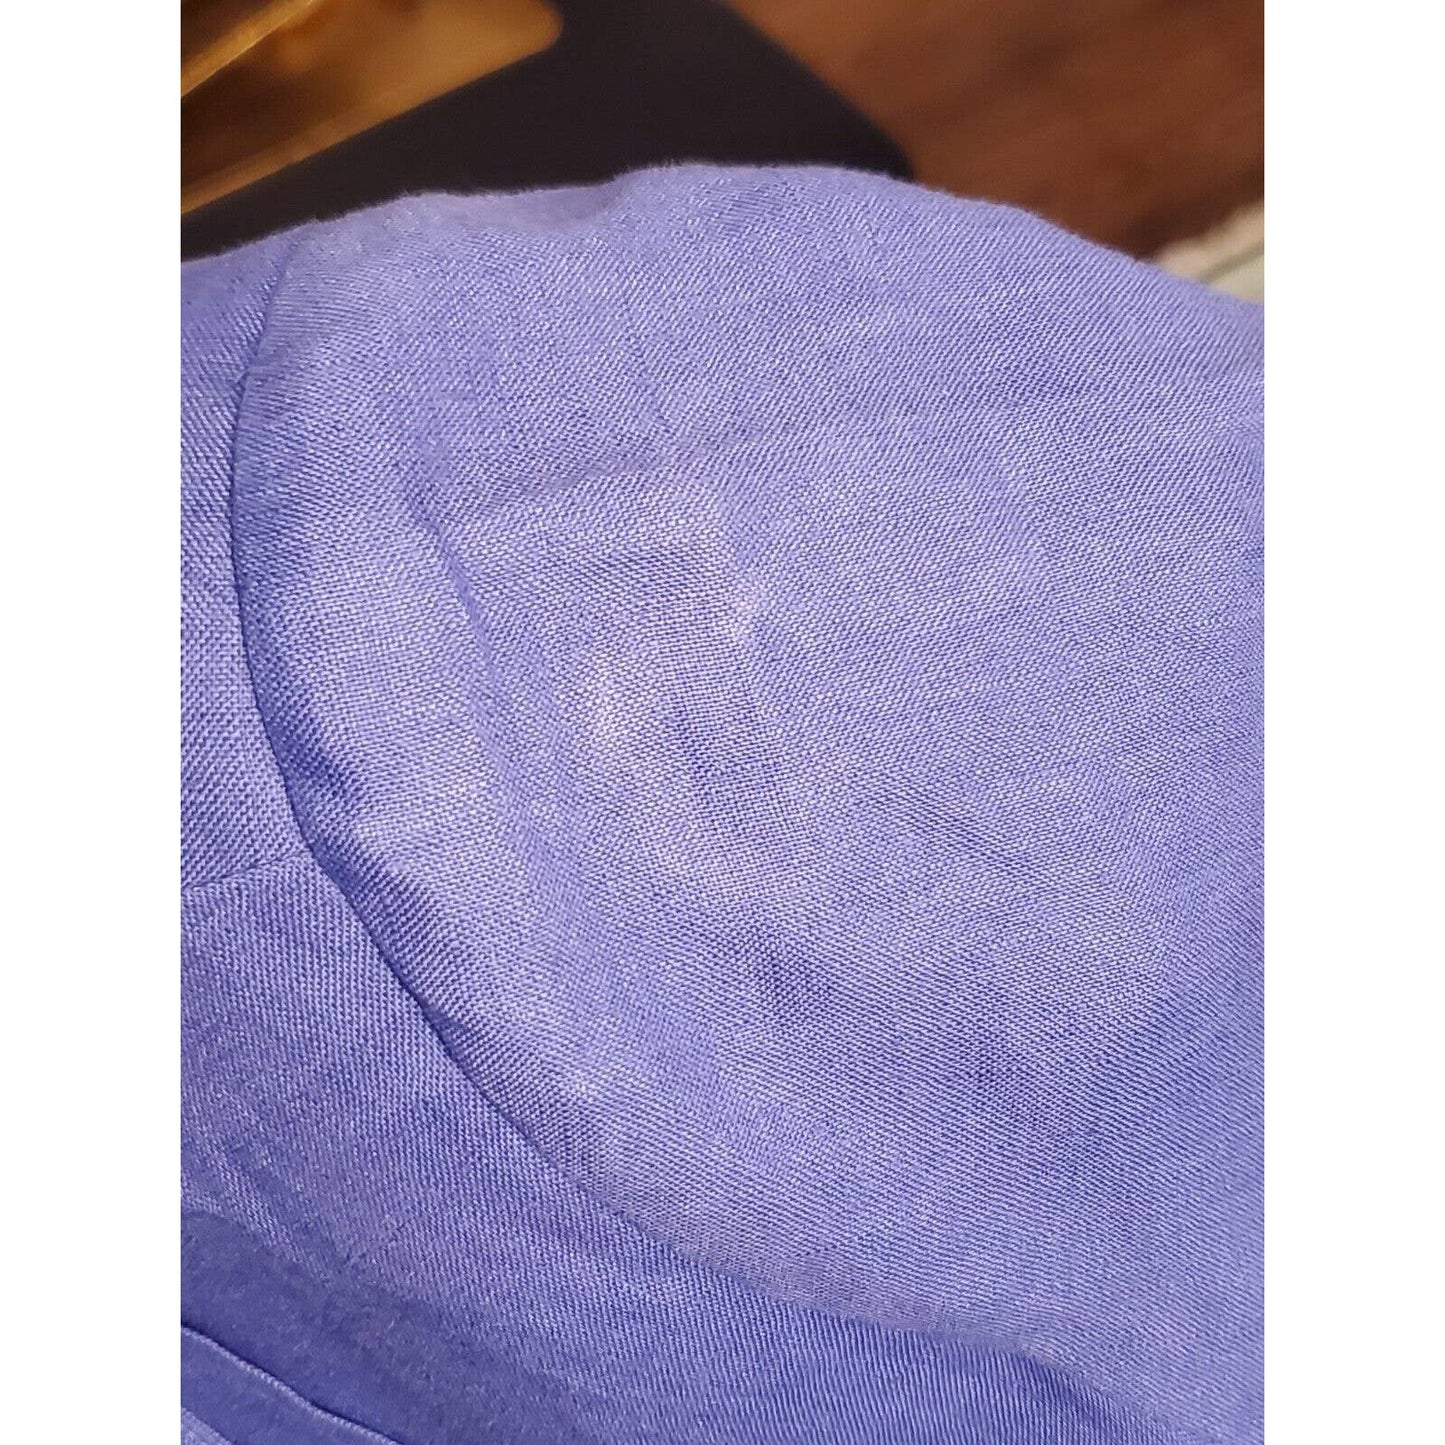 Due Per Due Women's Blue Linen Short Sleeve Shirt & Maxi Dress 2 Pc's Suit 14